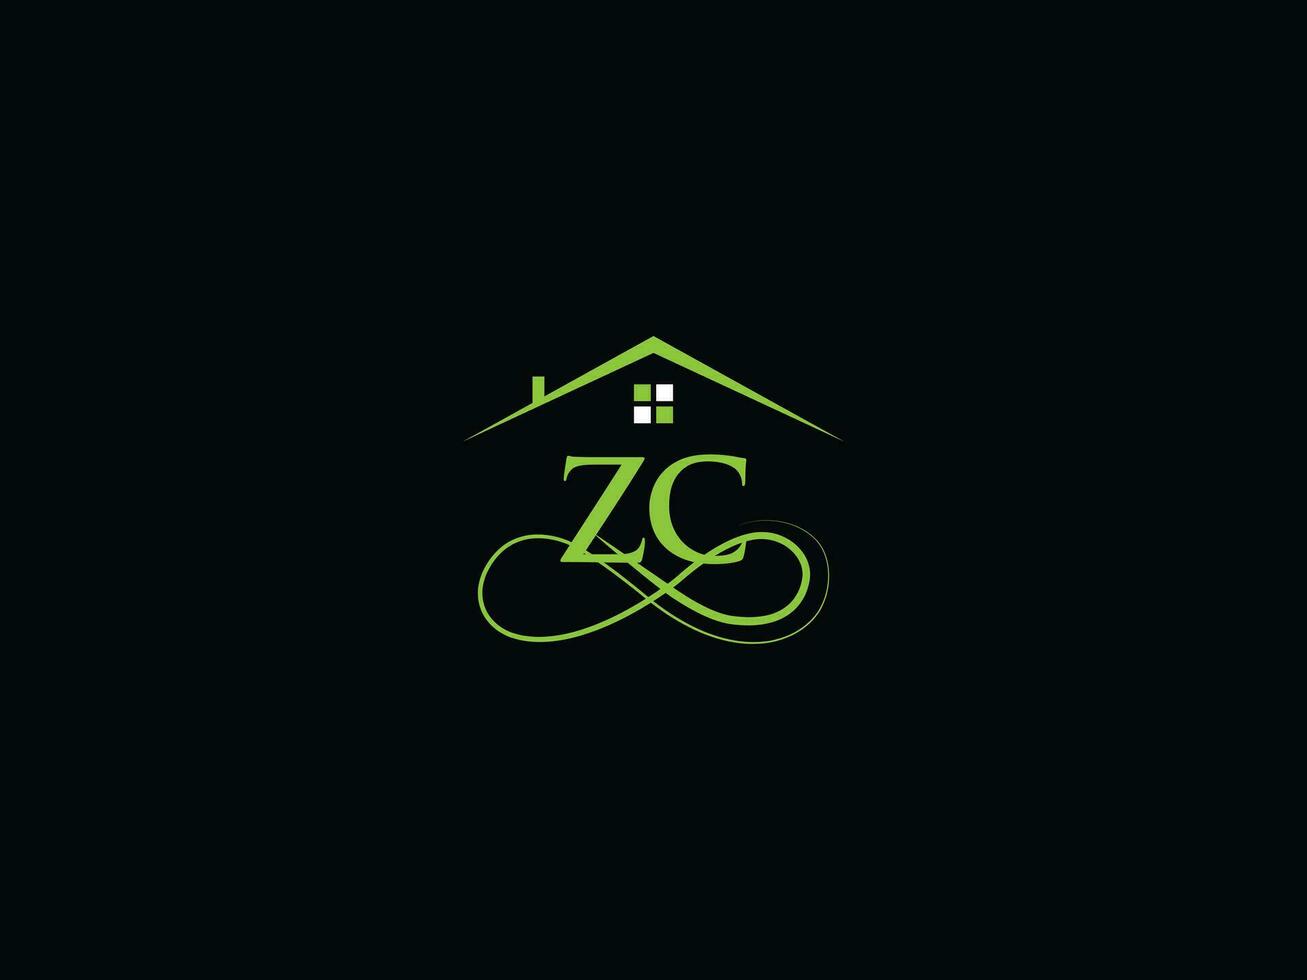 réel biens zc logo vecteur, initiale zc cz luxe bâtiment logo lettre vecteur